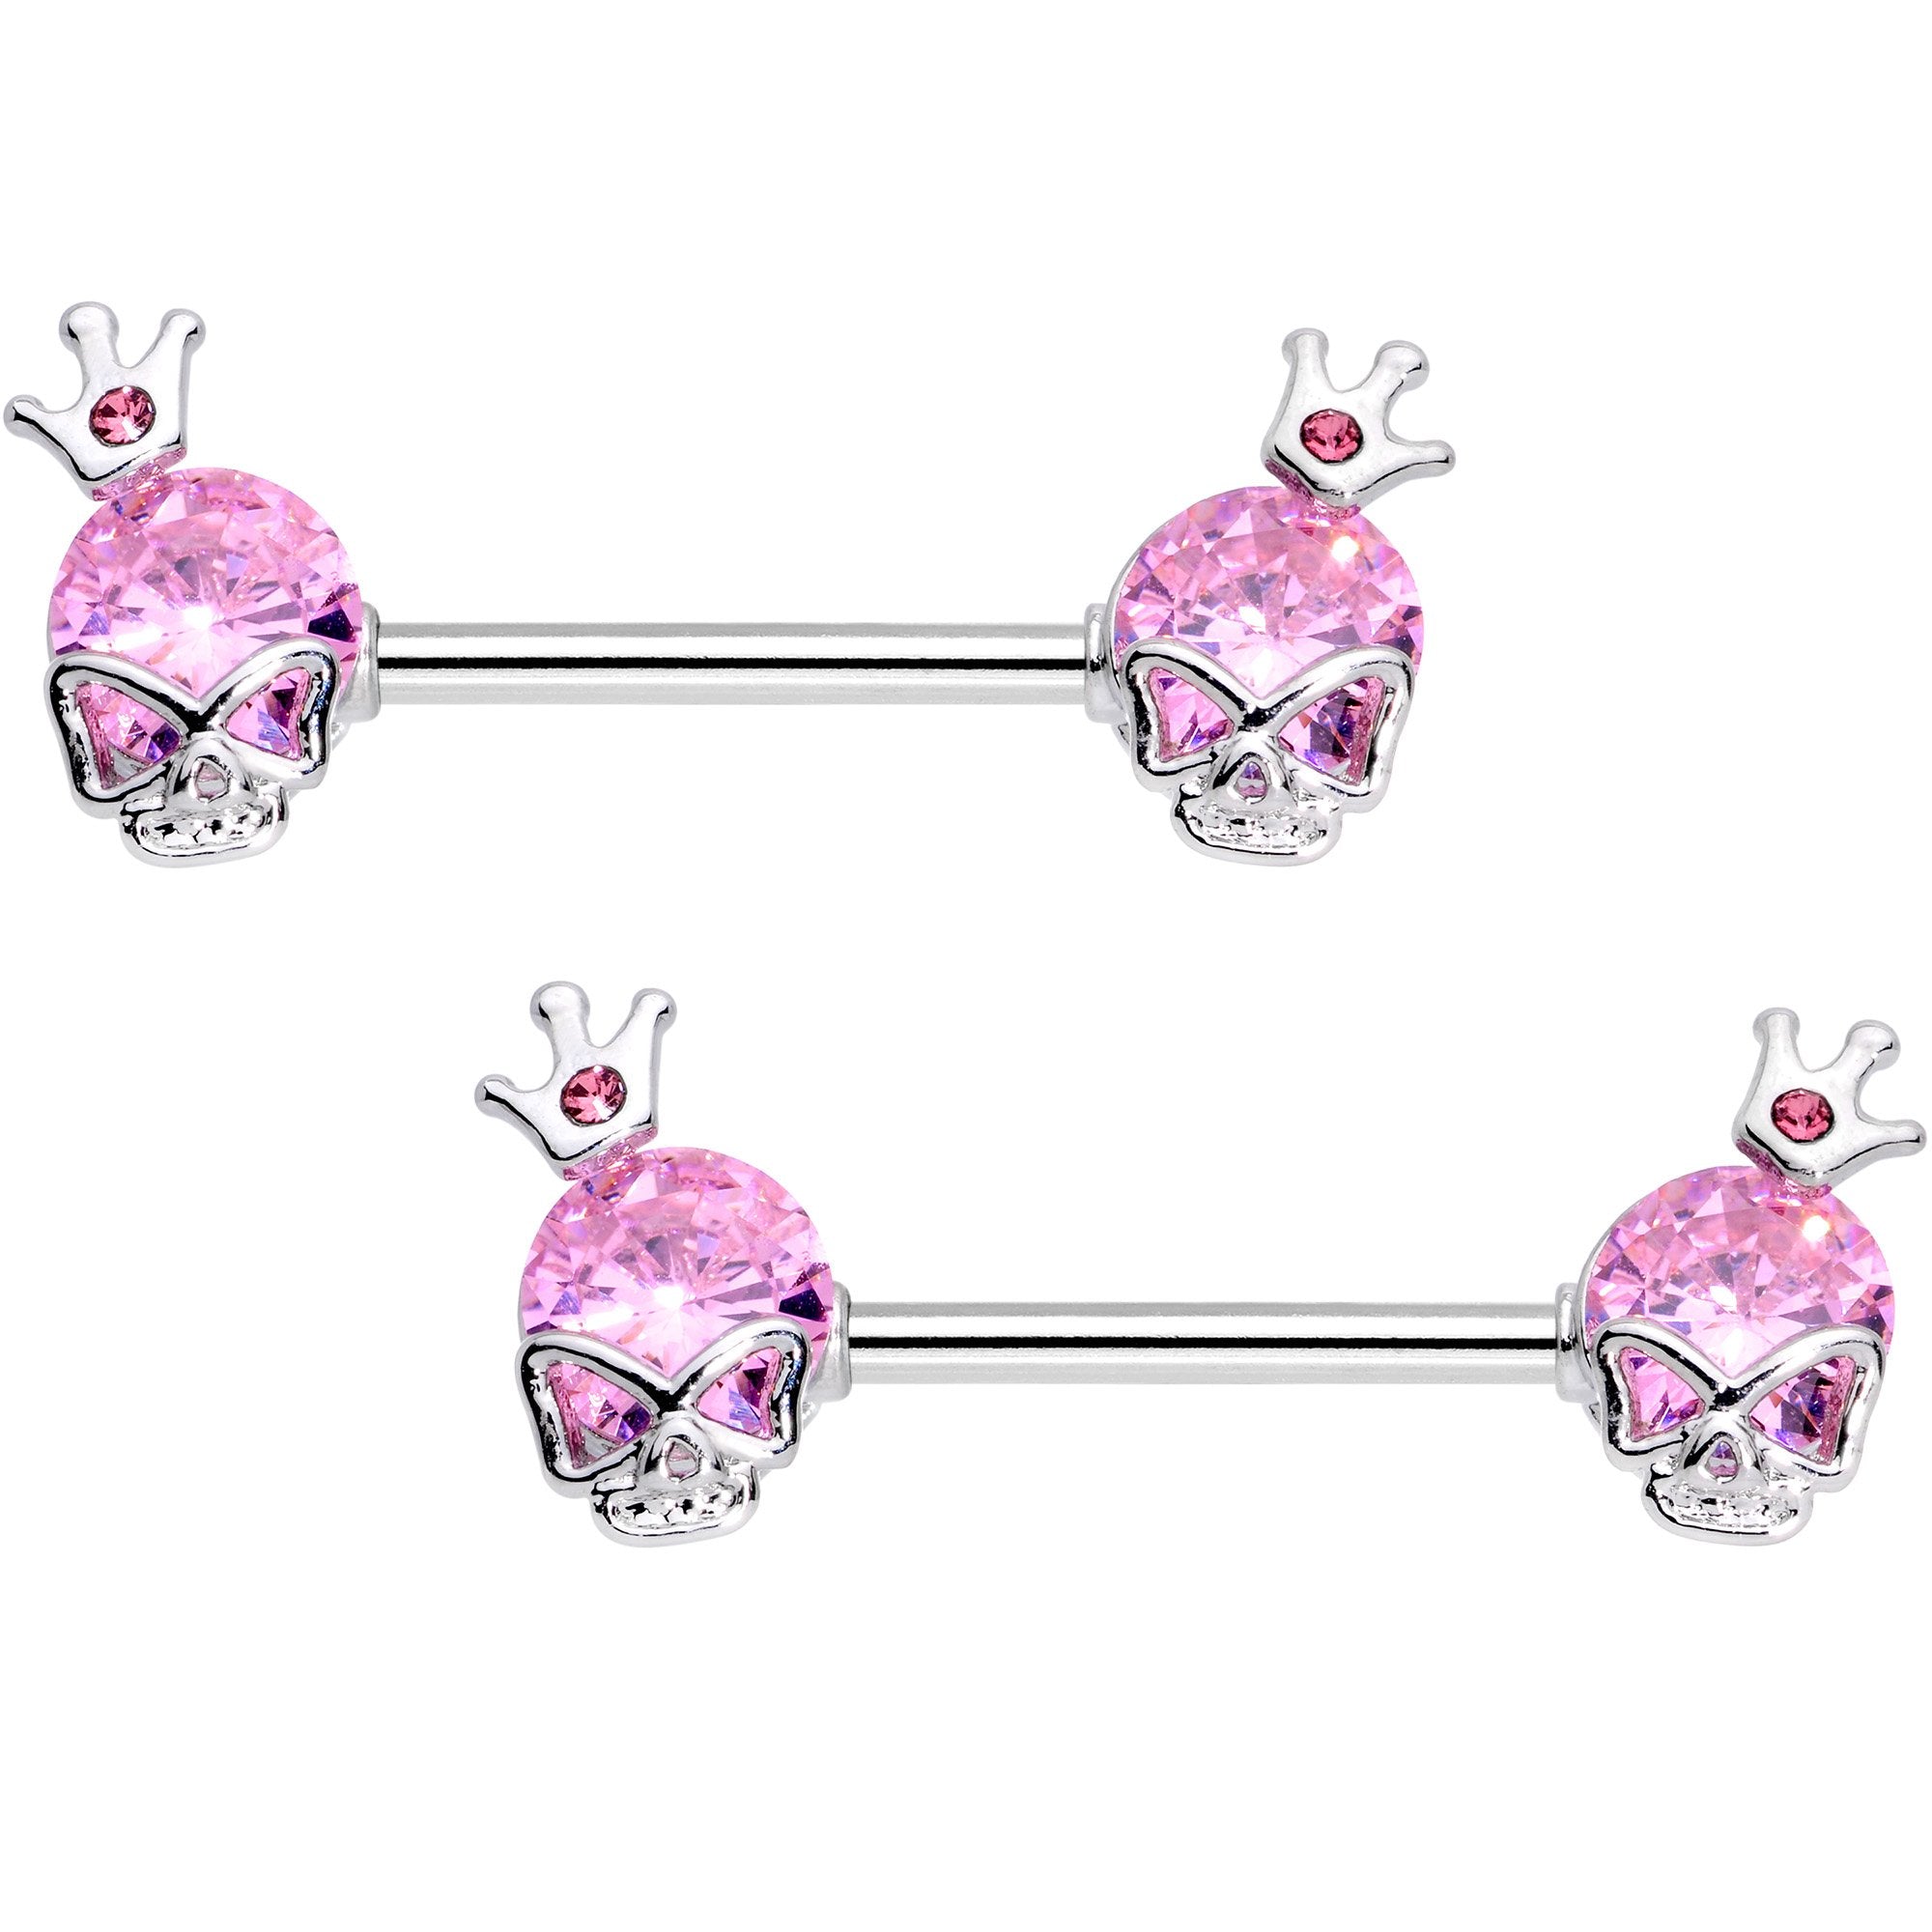 9/16 Pink Gem Queen Skull Barbell Nipple Ring Set